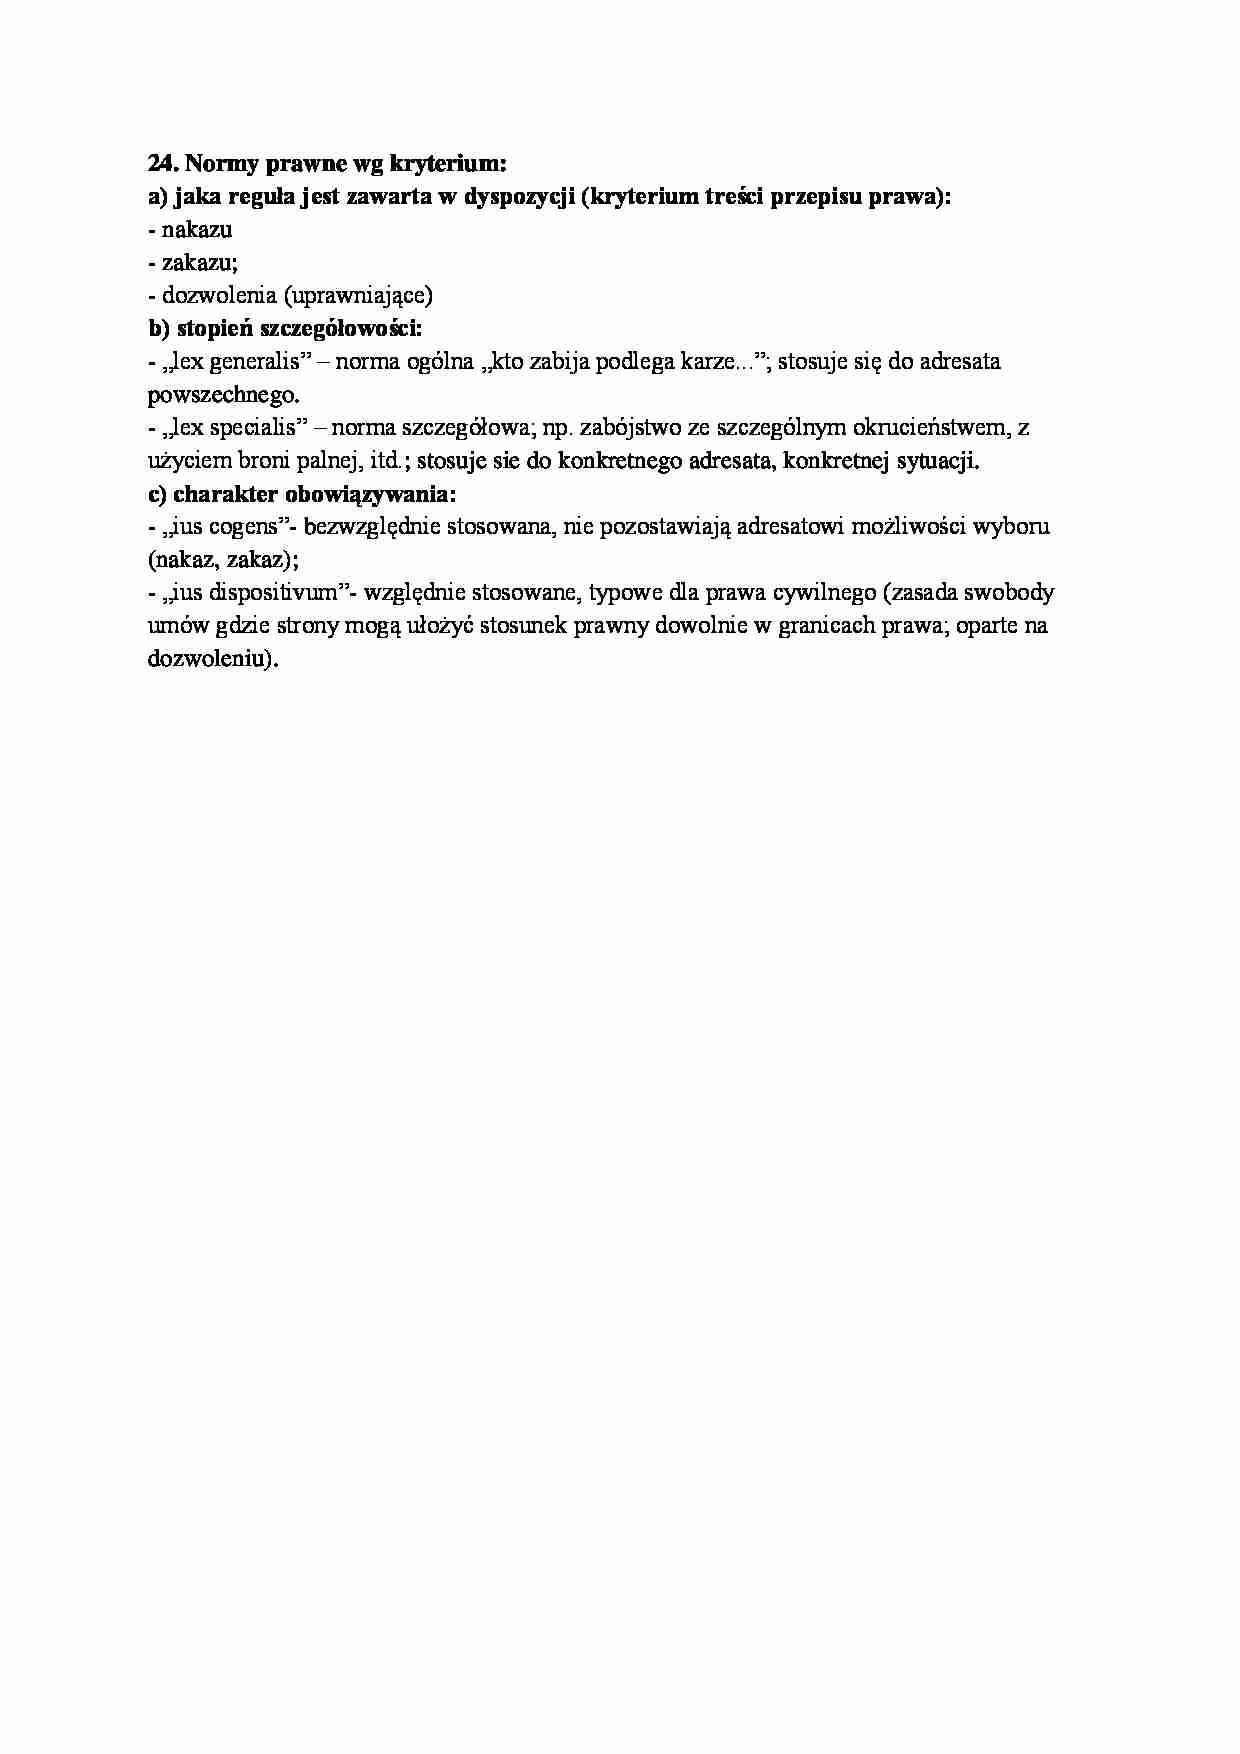 Normy prawne według kryterium-opracowanie - strona 1